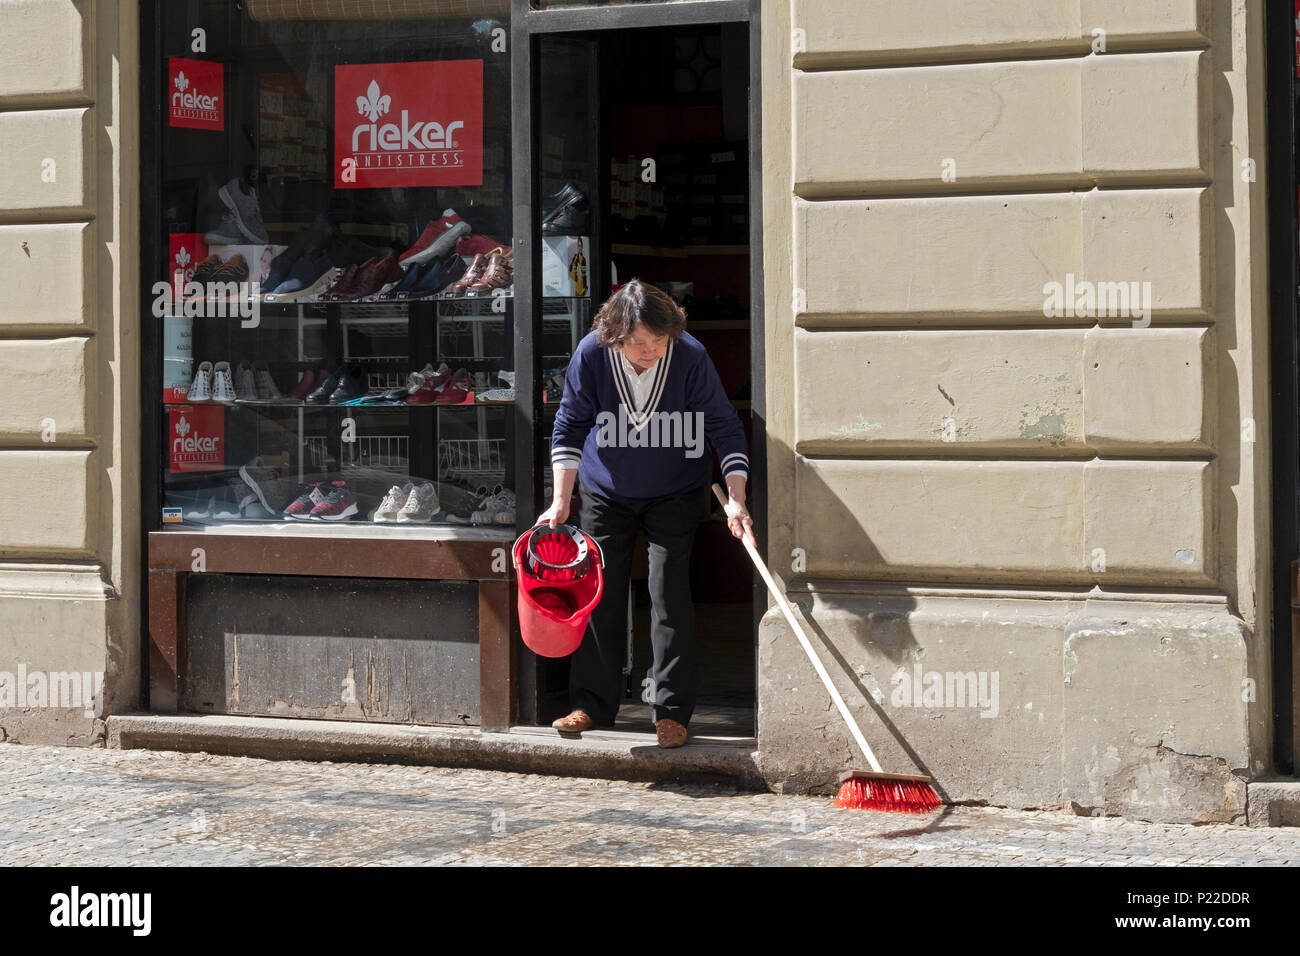 An Asian woman scrubbing the sidewalk outside of a shoe shop on Maiselova Street in Prague, Czech Republic. Stock Photo